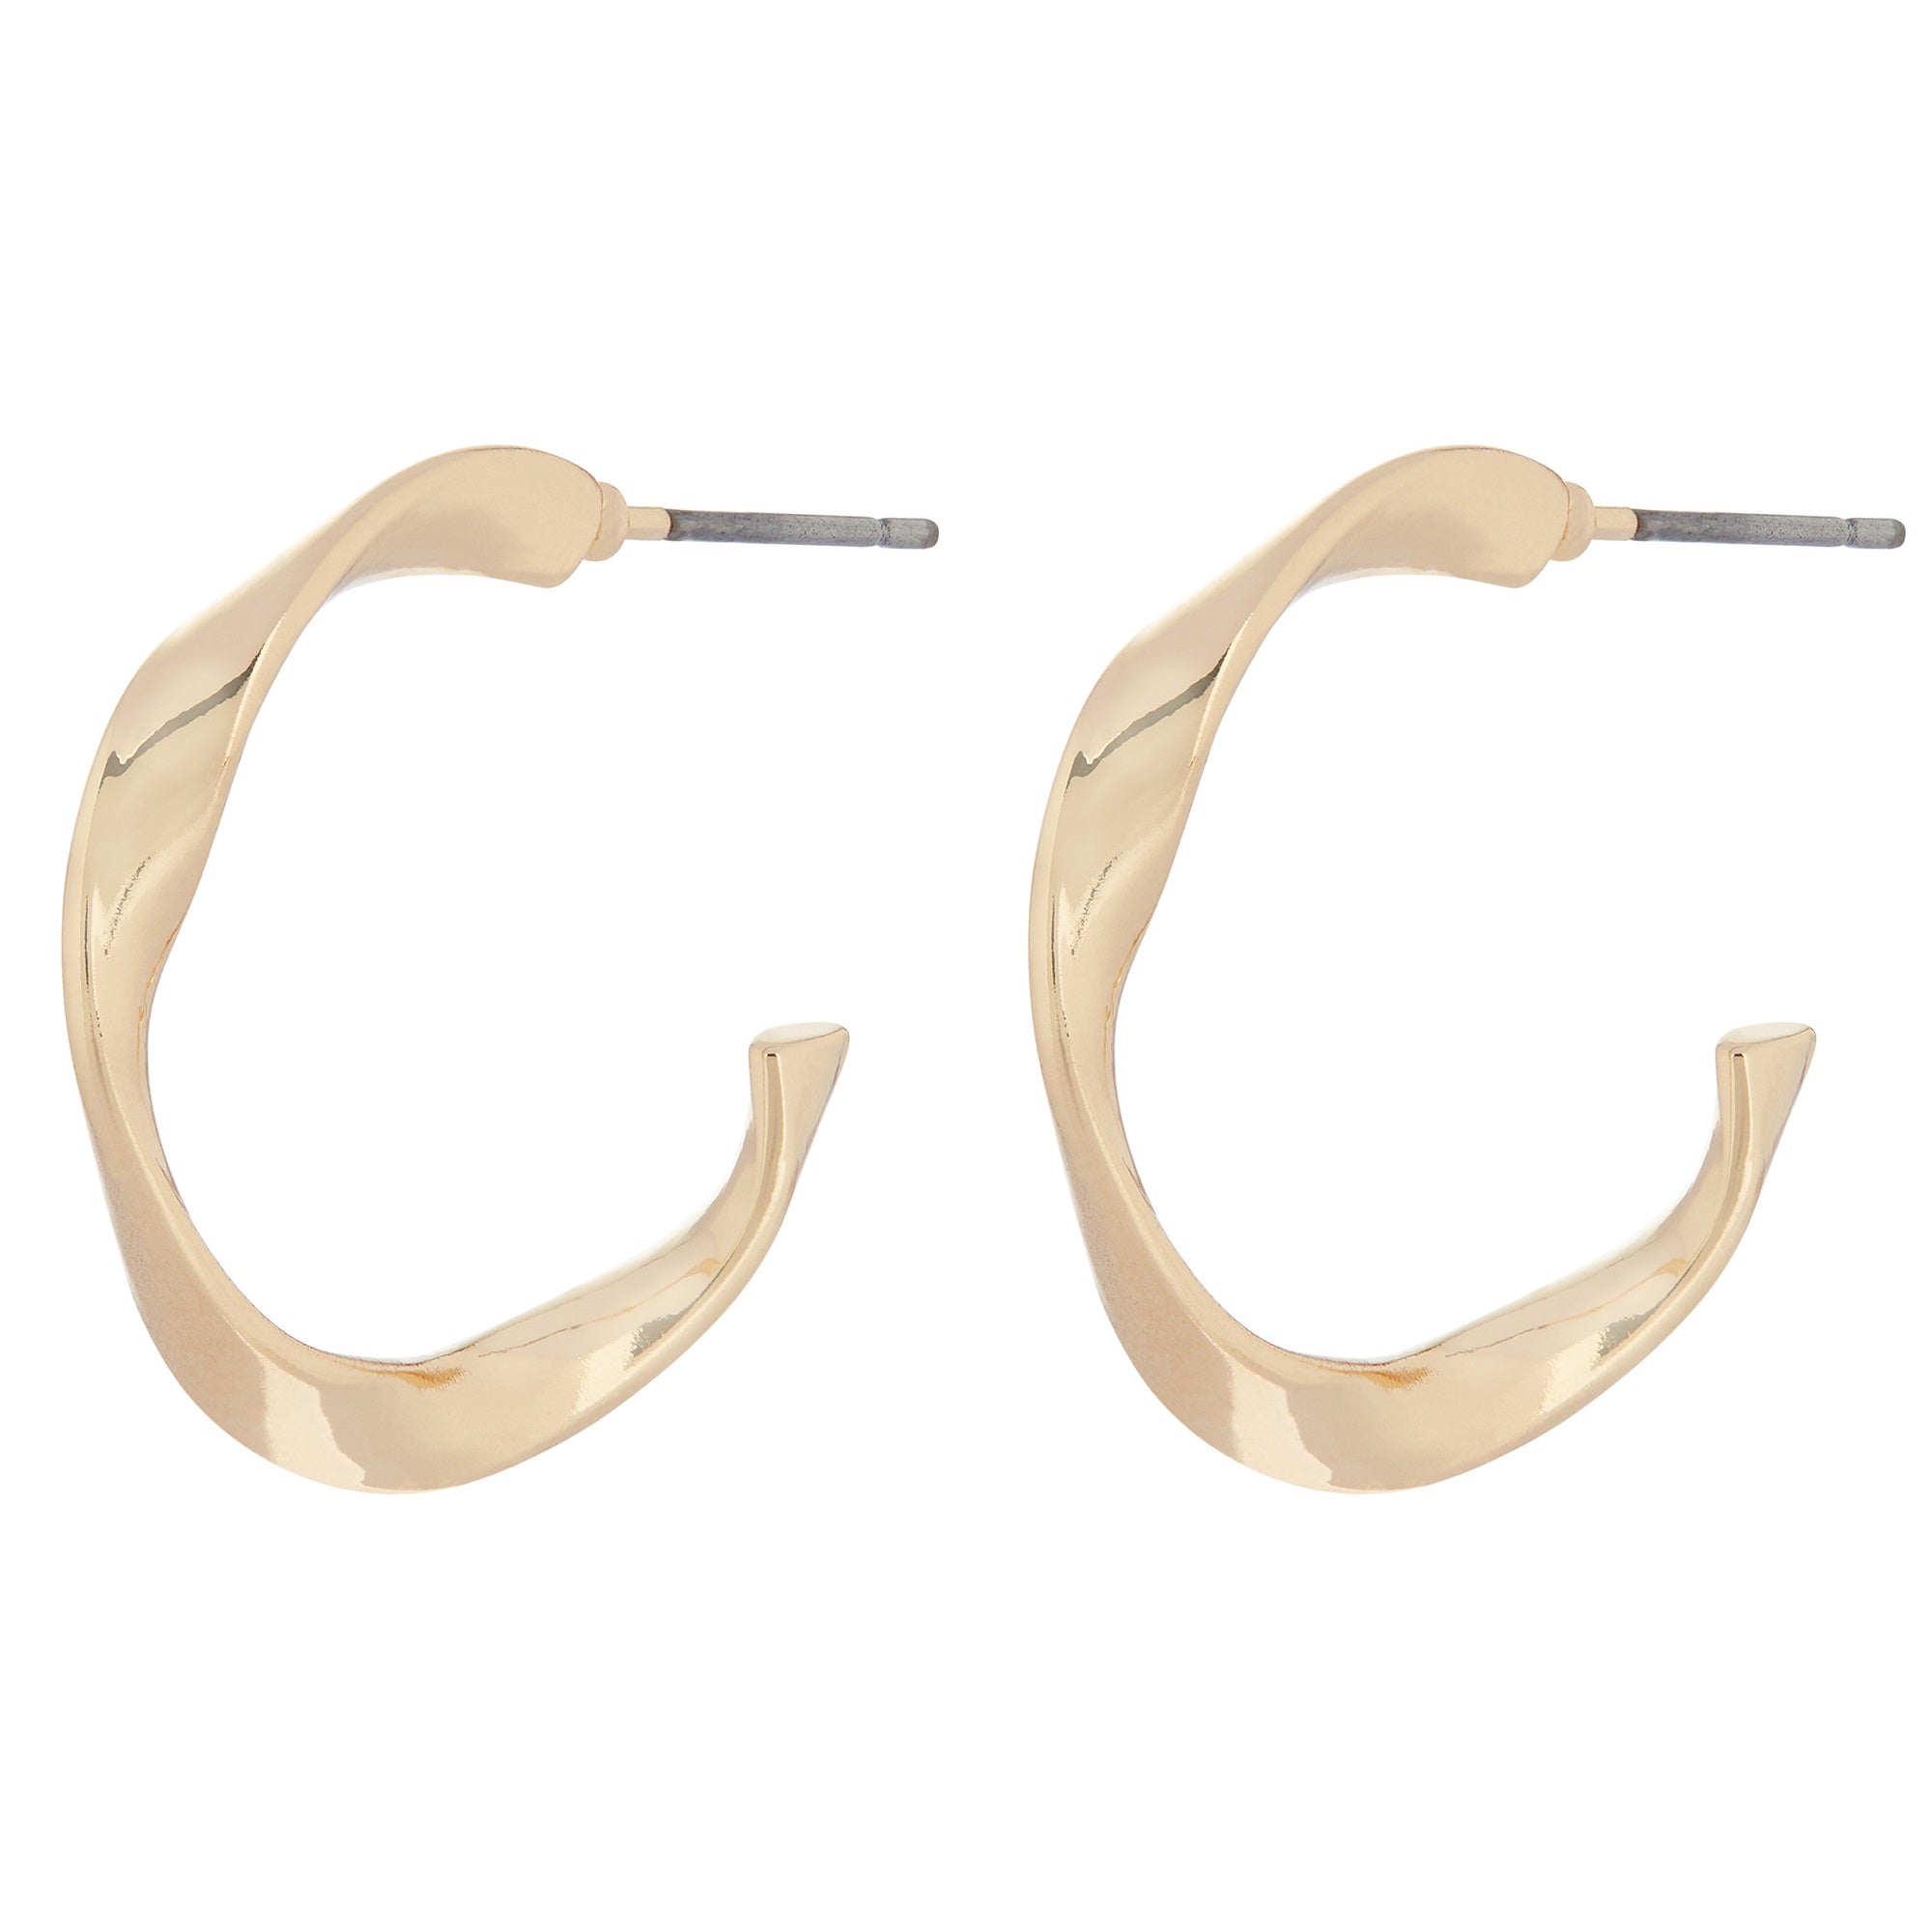 Accessorize London Small Twist Hoop Earrings